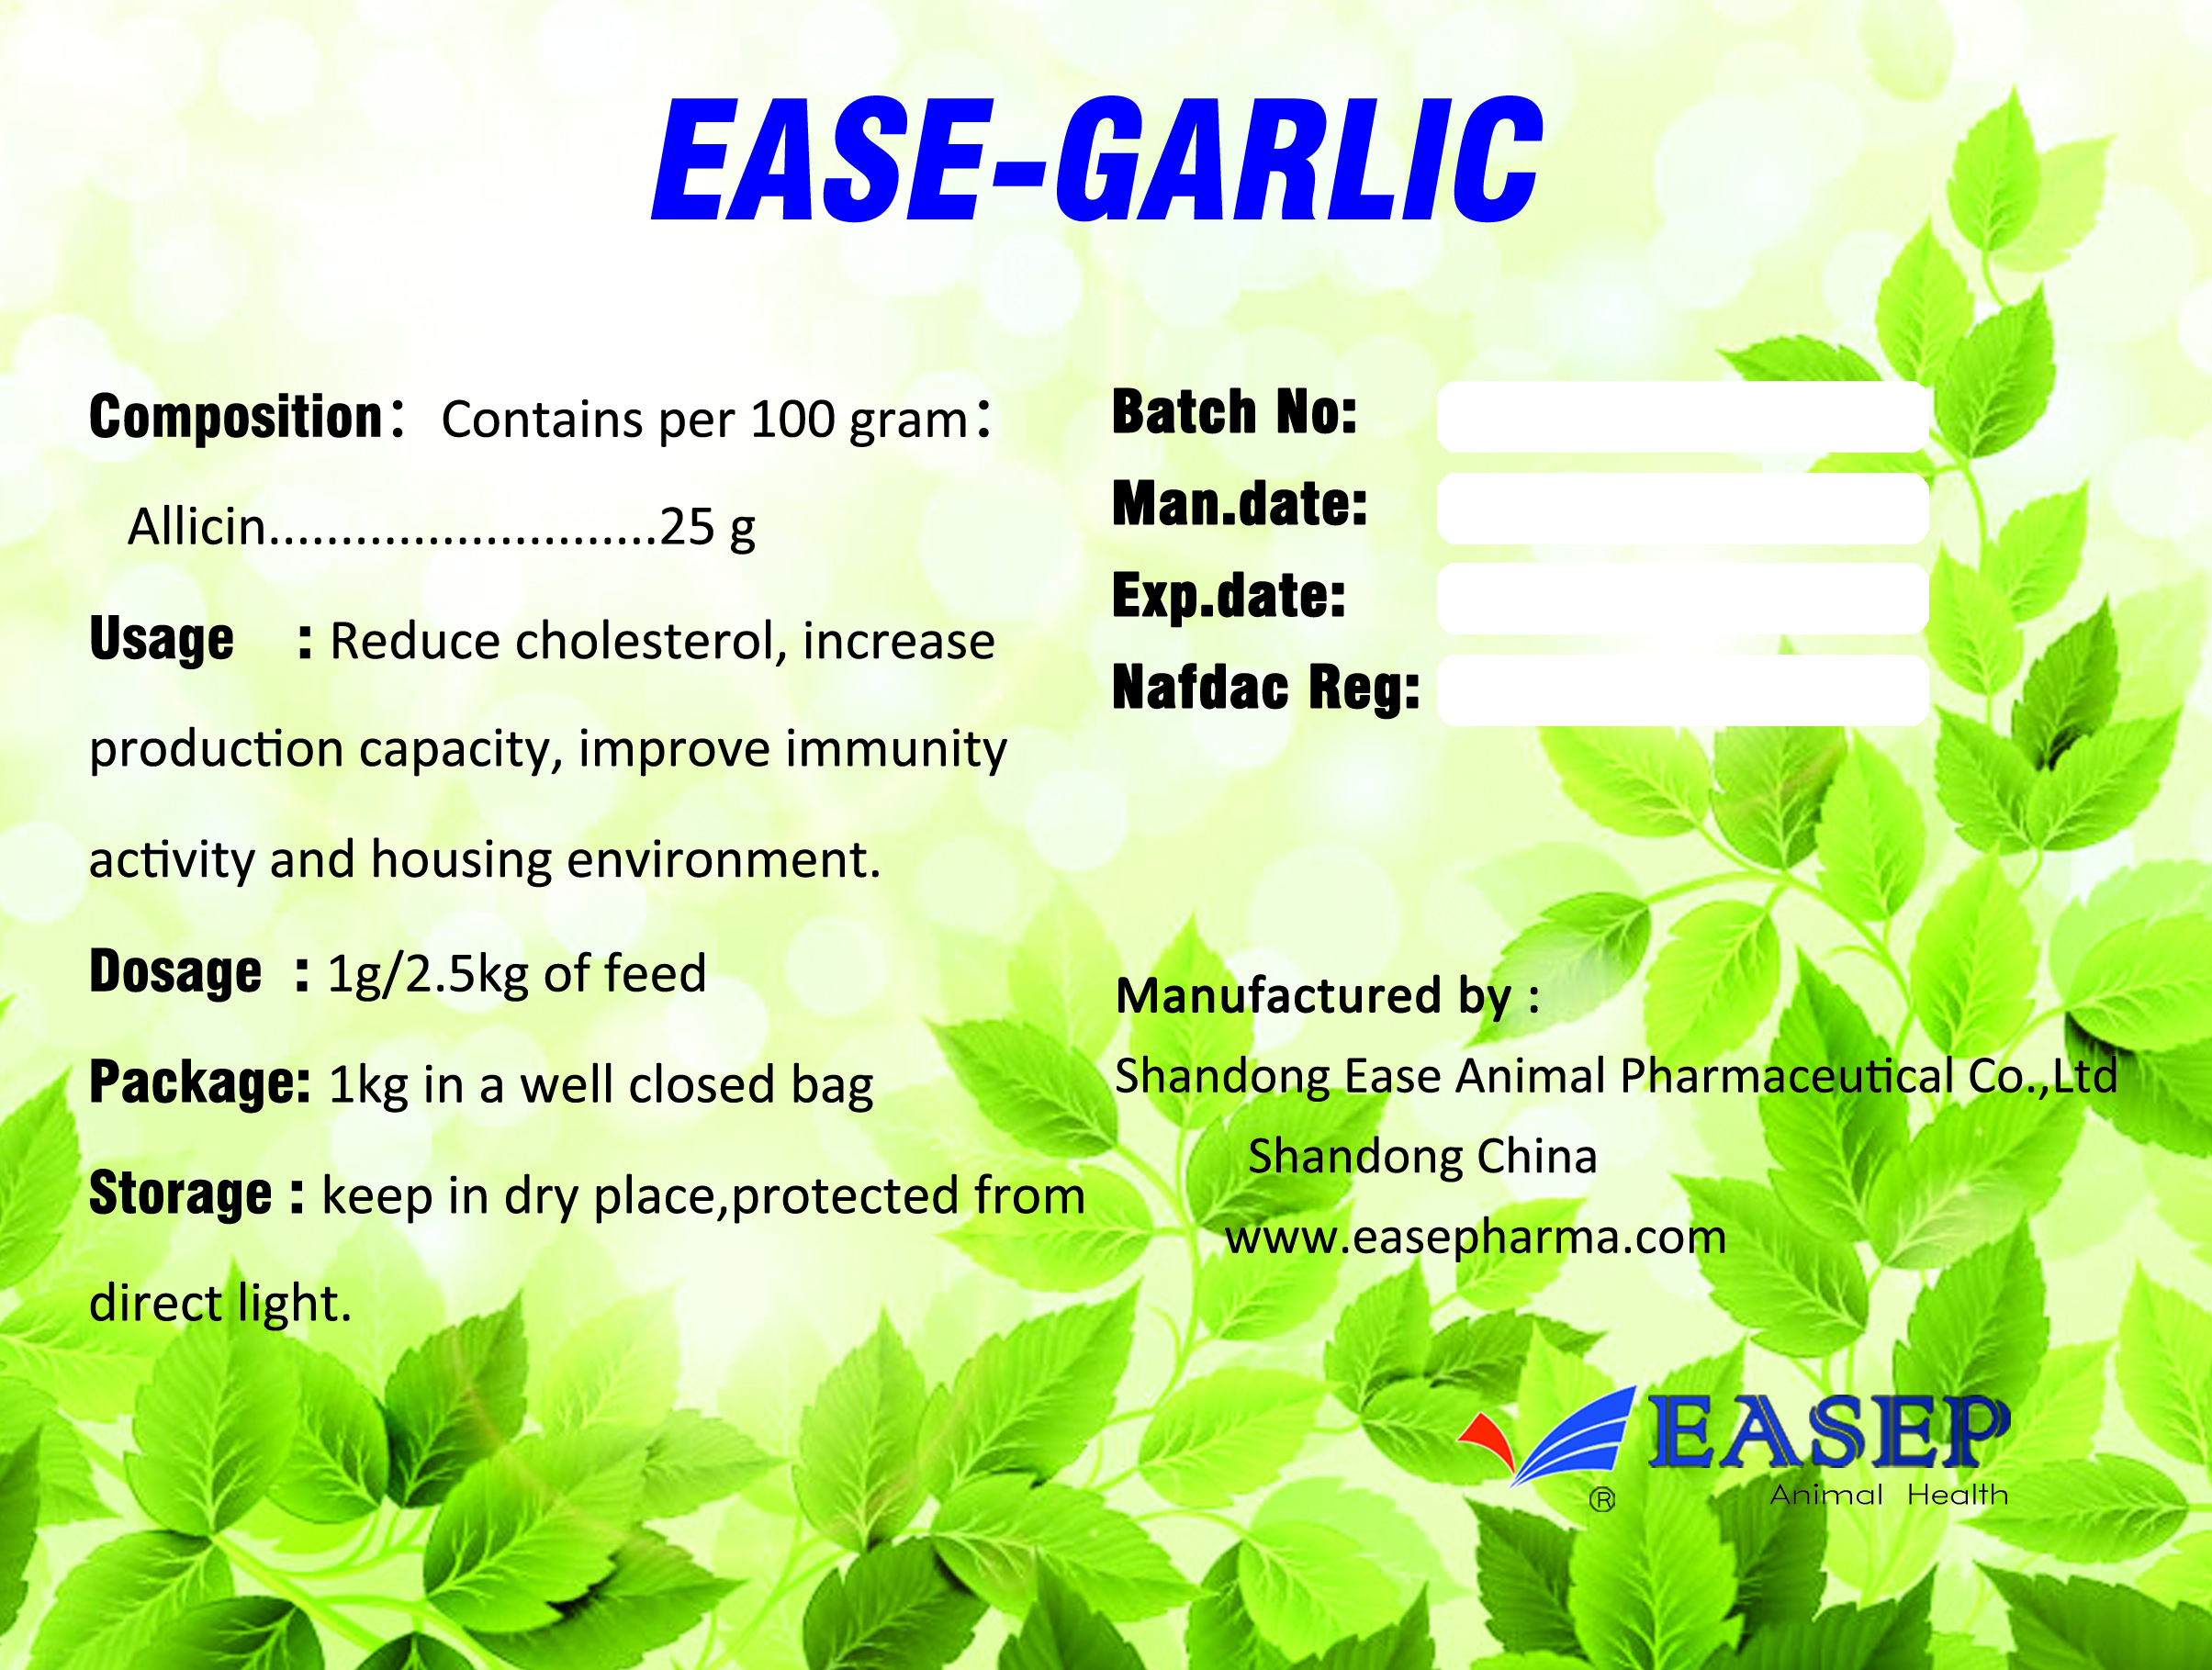 Ease-Garlic